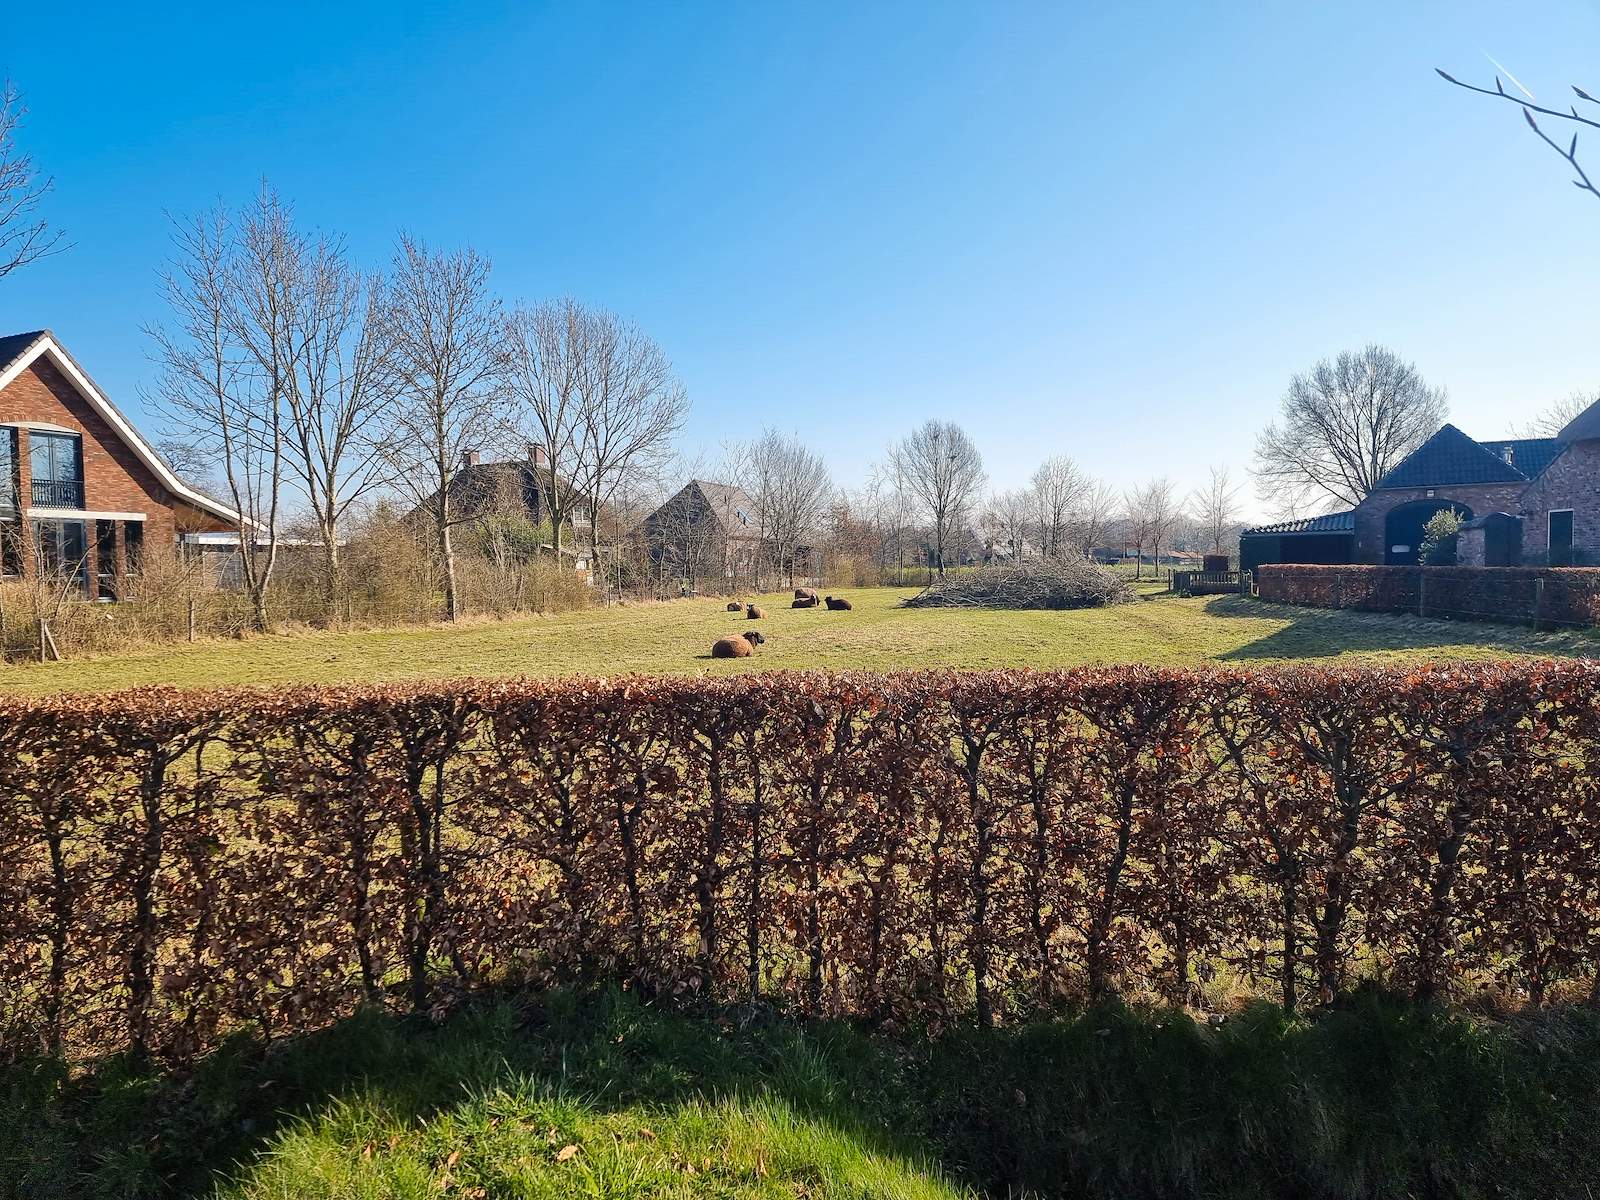 Foto van het buitengebied rondom Ollandseweg, met daarop een grasveld, een heg en een paar koeien.